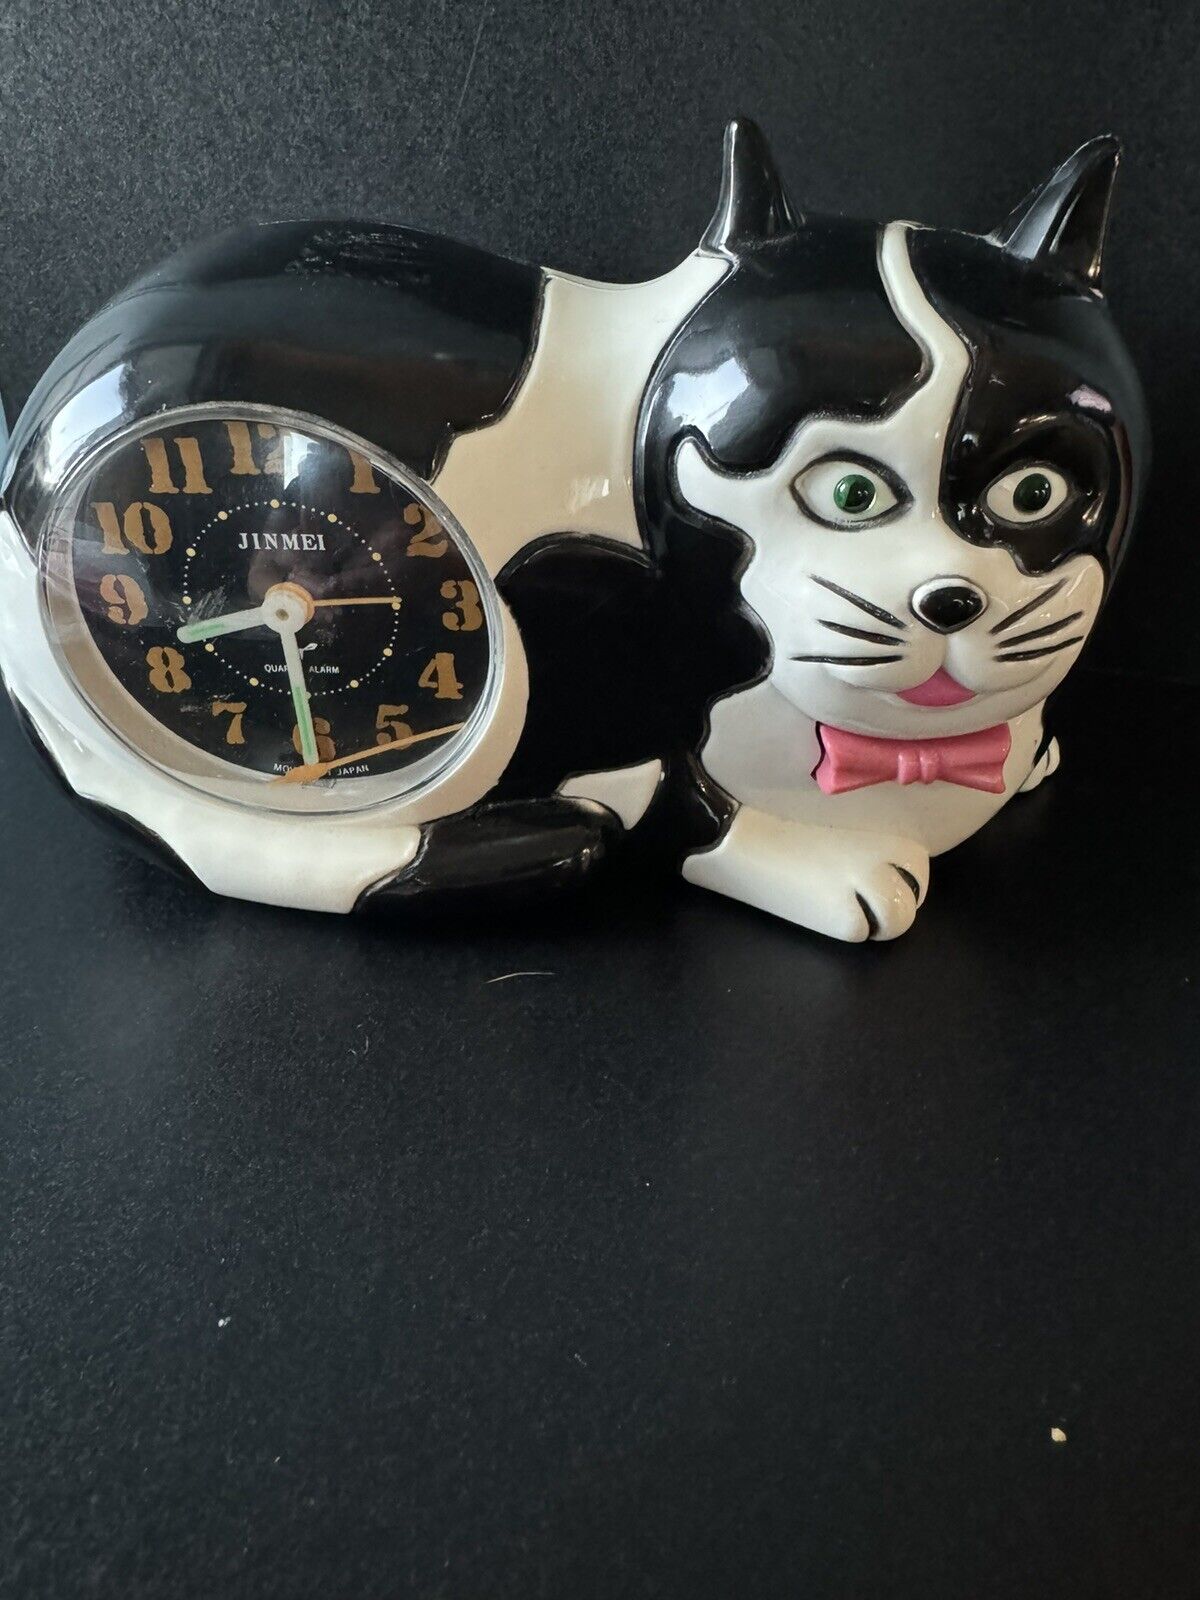 JINMEI Cat Alarm Clock Black/White RARE 1989 Japan *parts or repair* Kawaii ￼